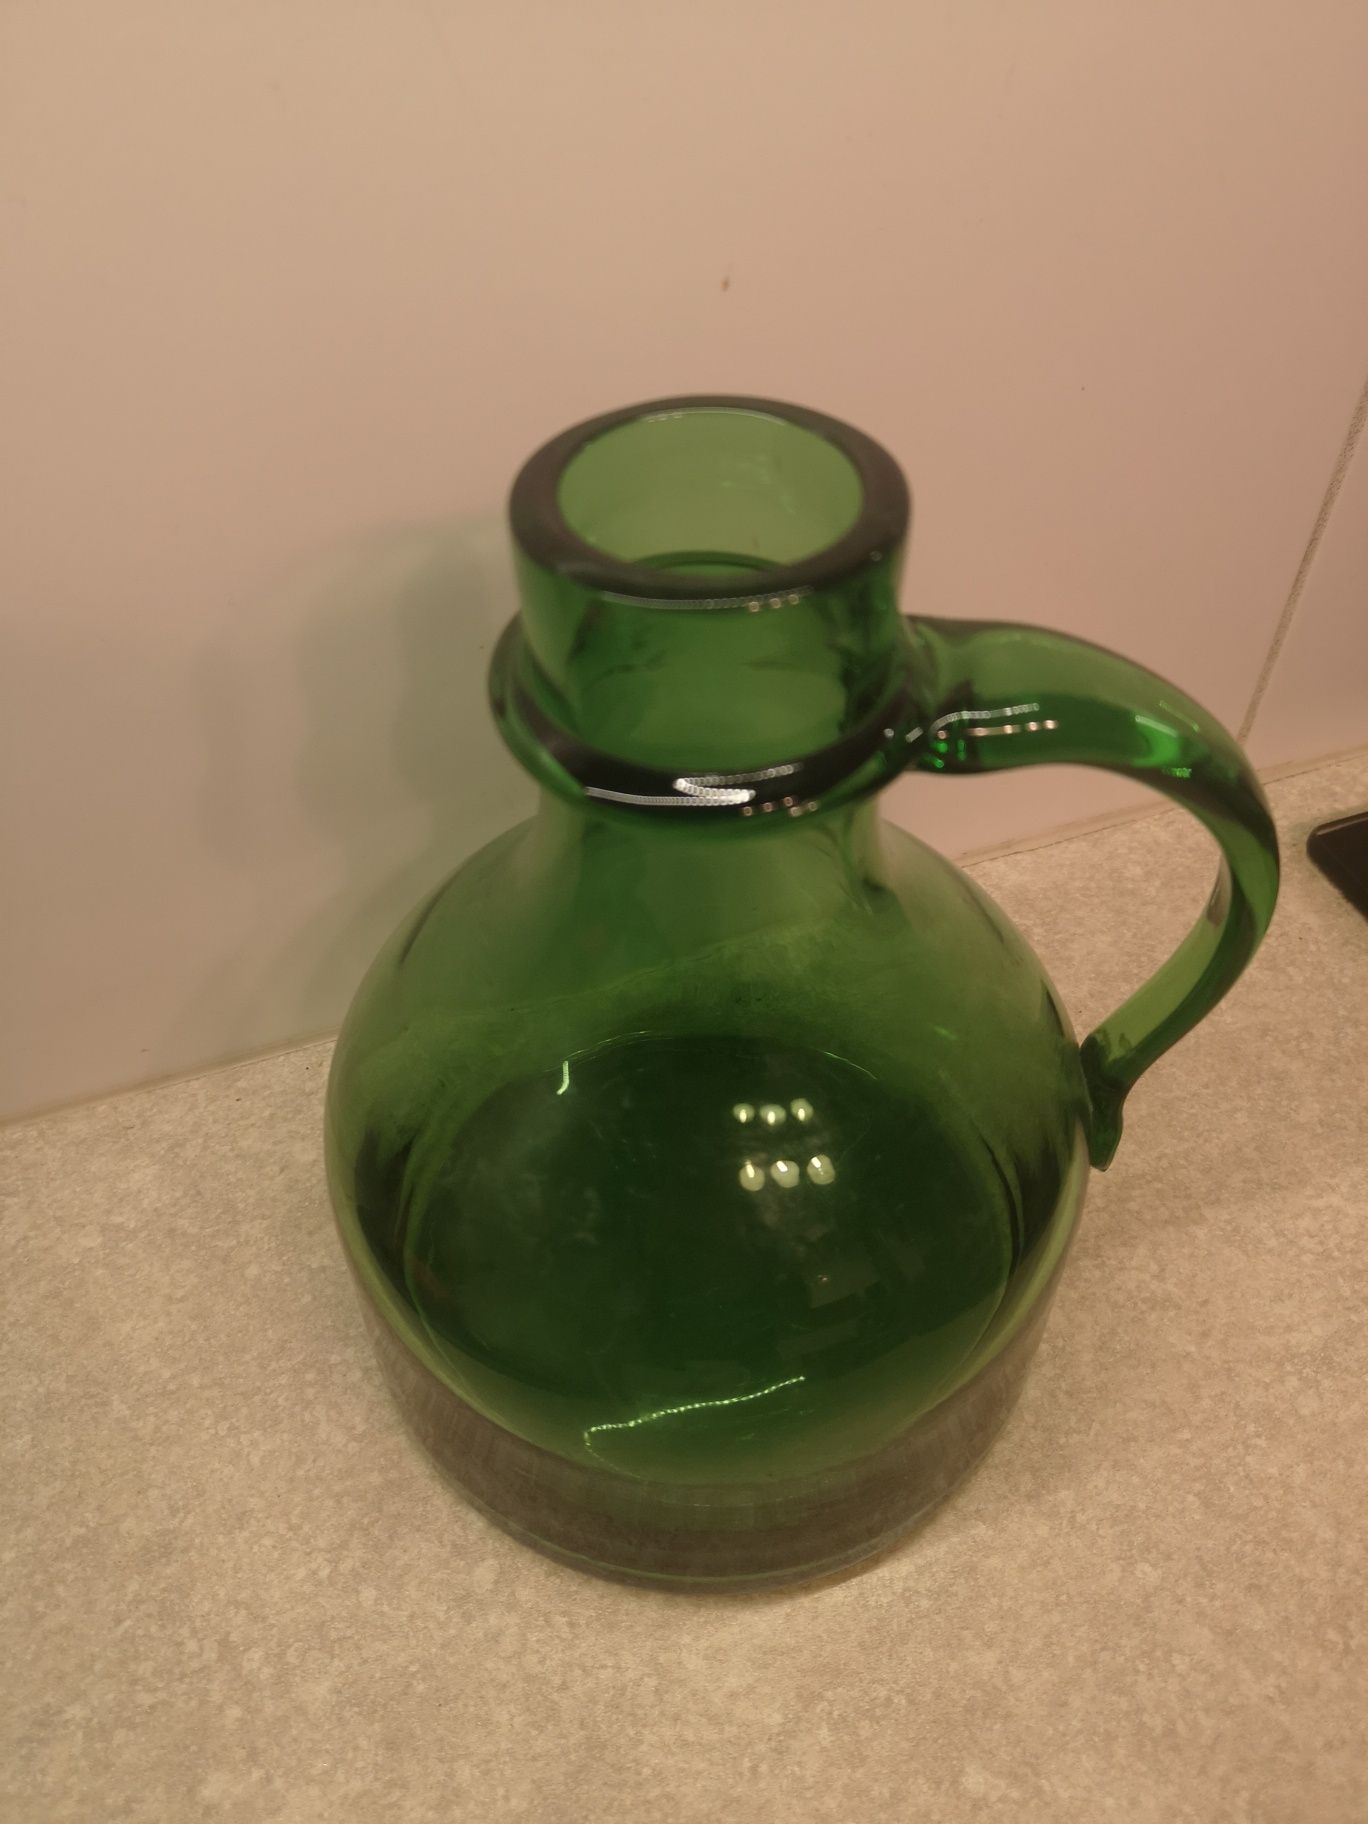 Stary wazon butelka zielona jedyna taka